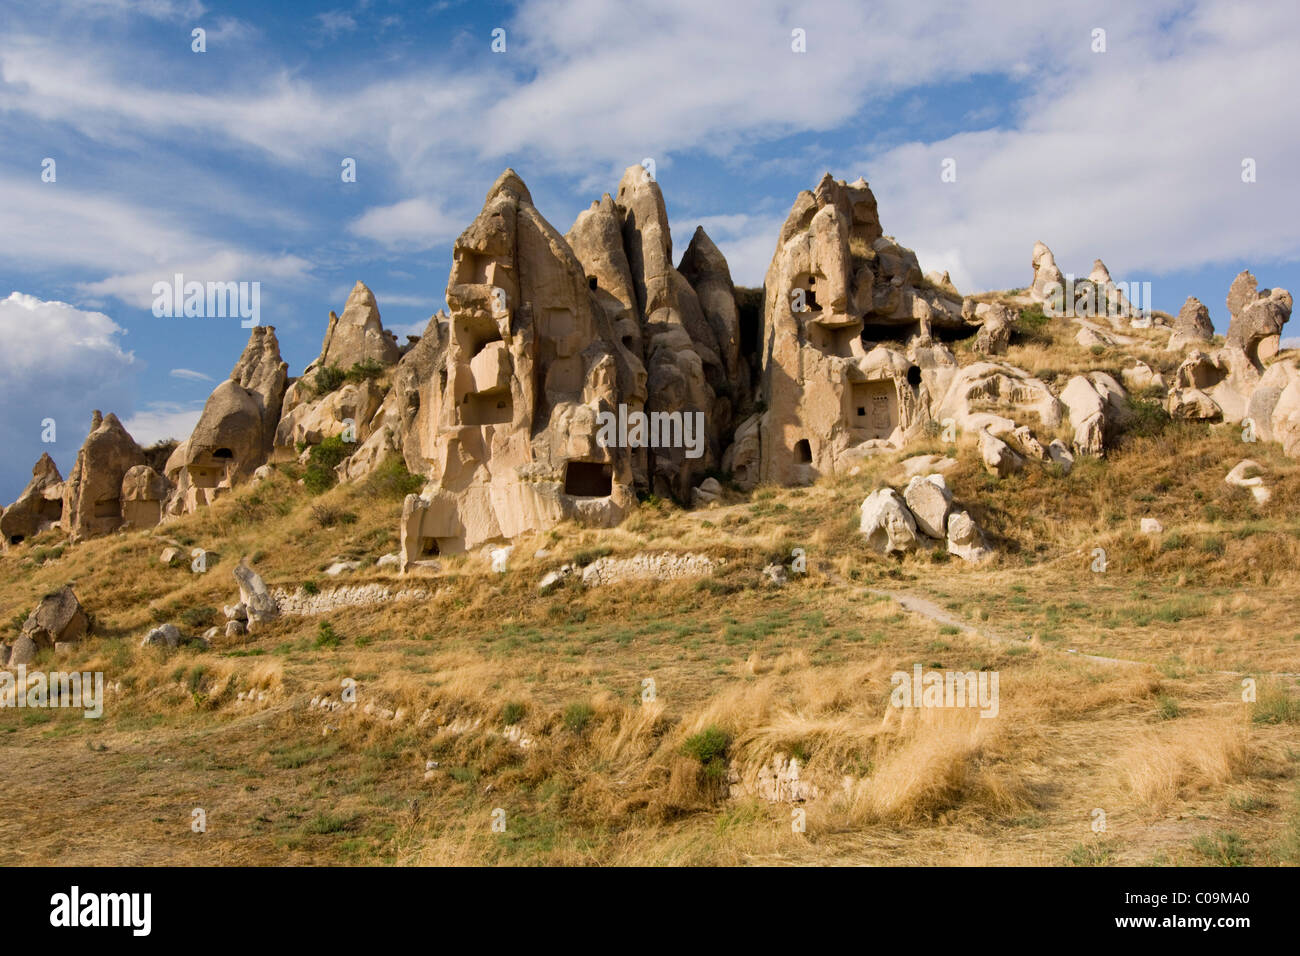 Tuffstein-Landschaft mit Höhlenwohnungen, die zum UNESCO-Weltkulturerbe, Göreme, Kappadokien, Zentral-Anatolien, Türkei, Asien Stockfoto